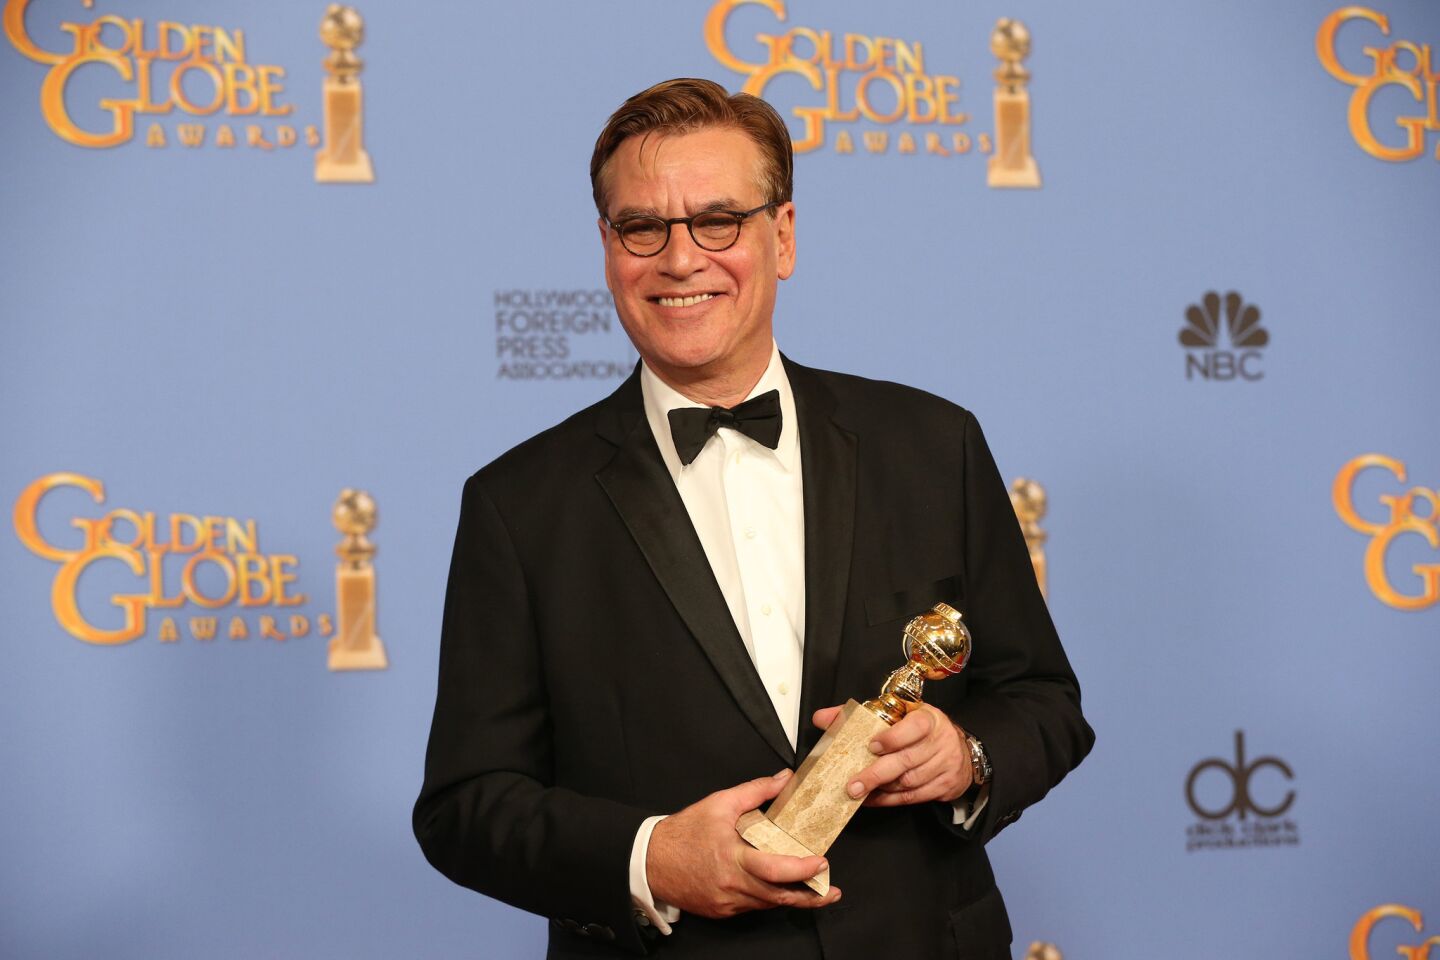 Aaron Sorkin | Golden Globe